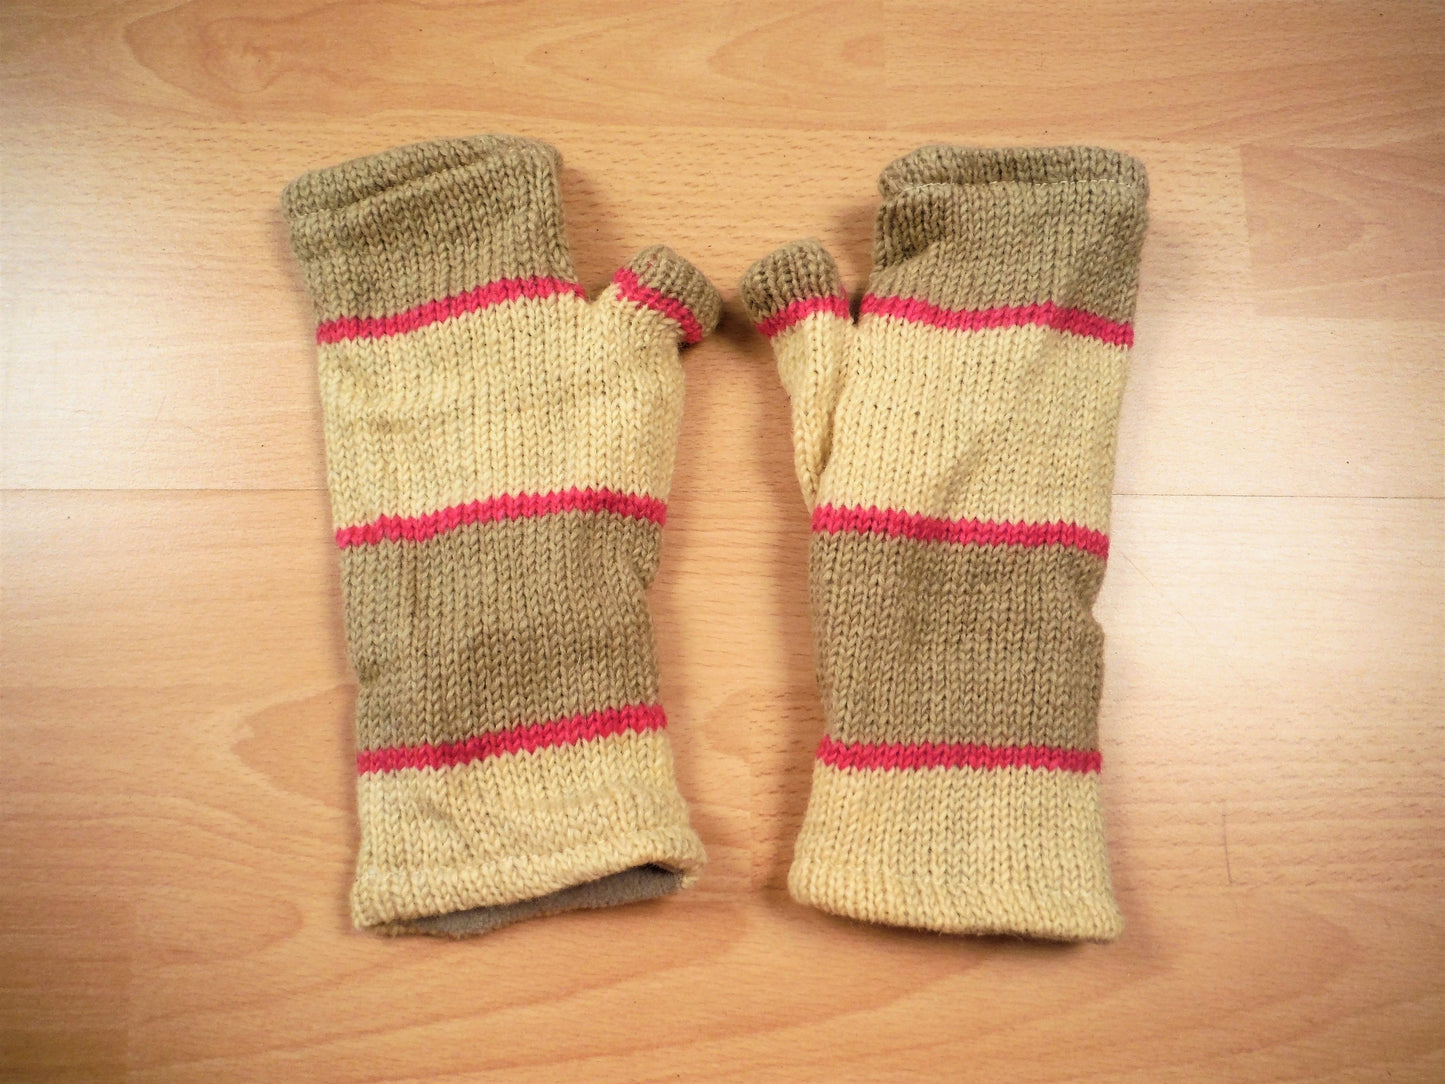 Chauffe-poignets tricotés doublés de polaire - Rayé crème et rose (coupe ample)